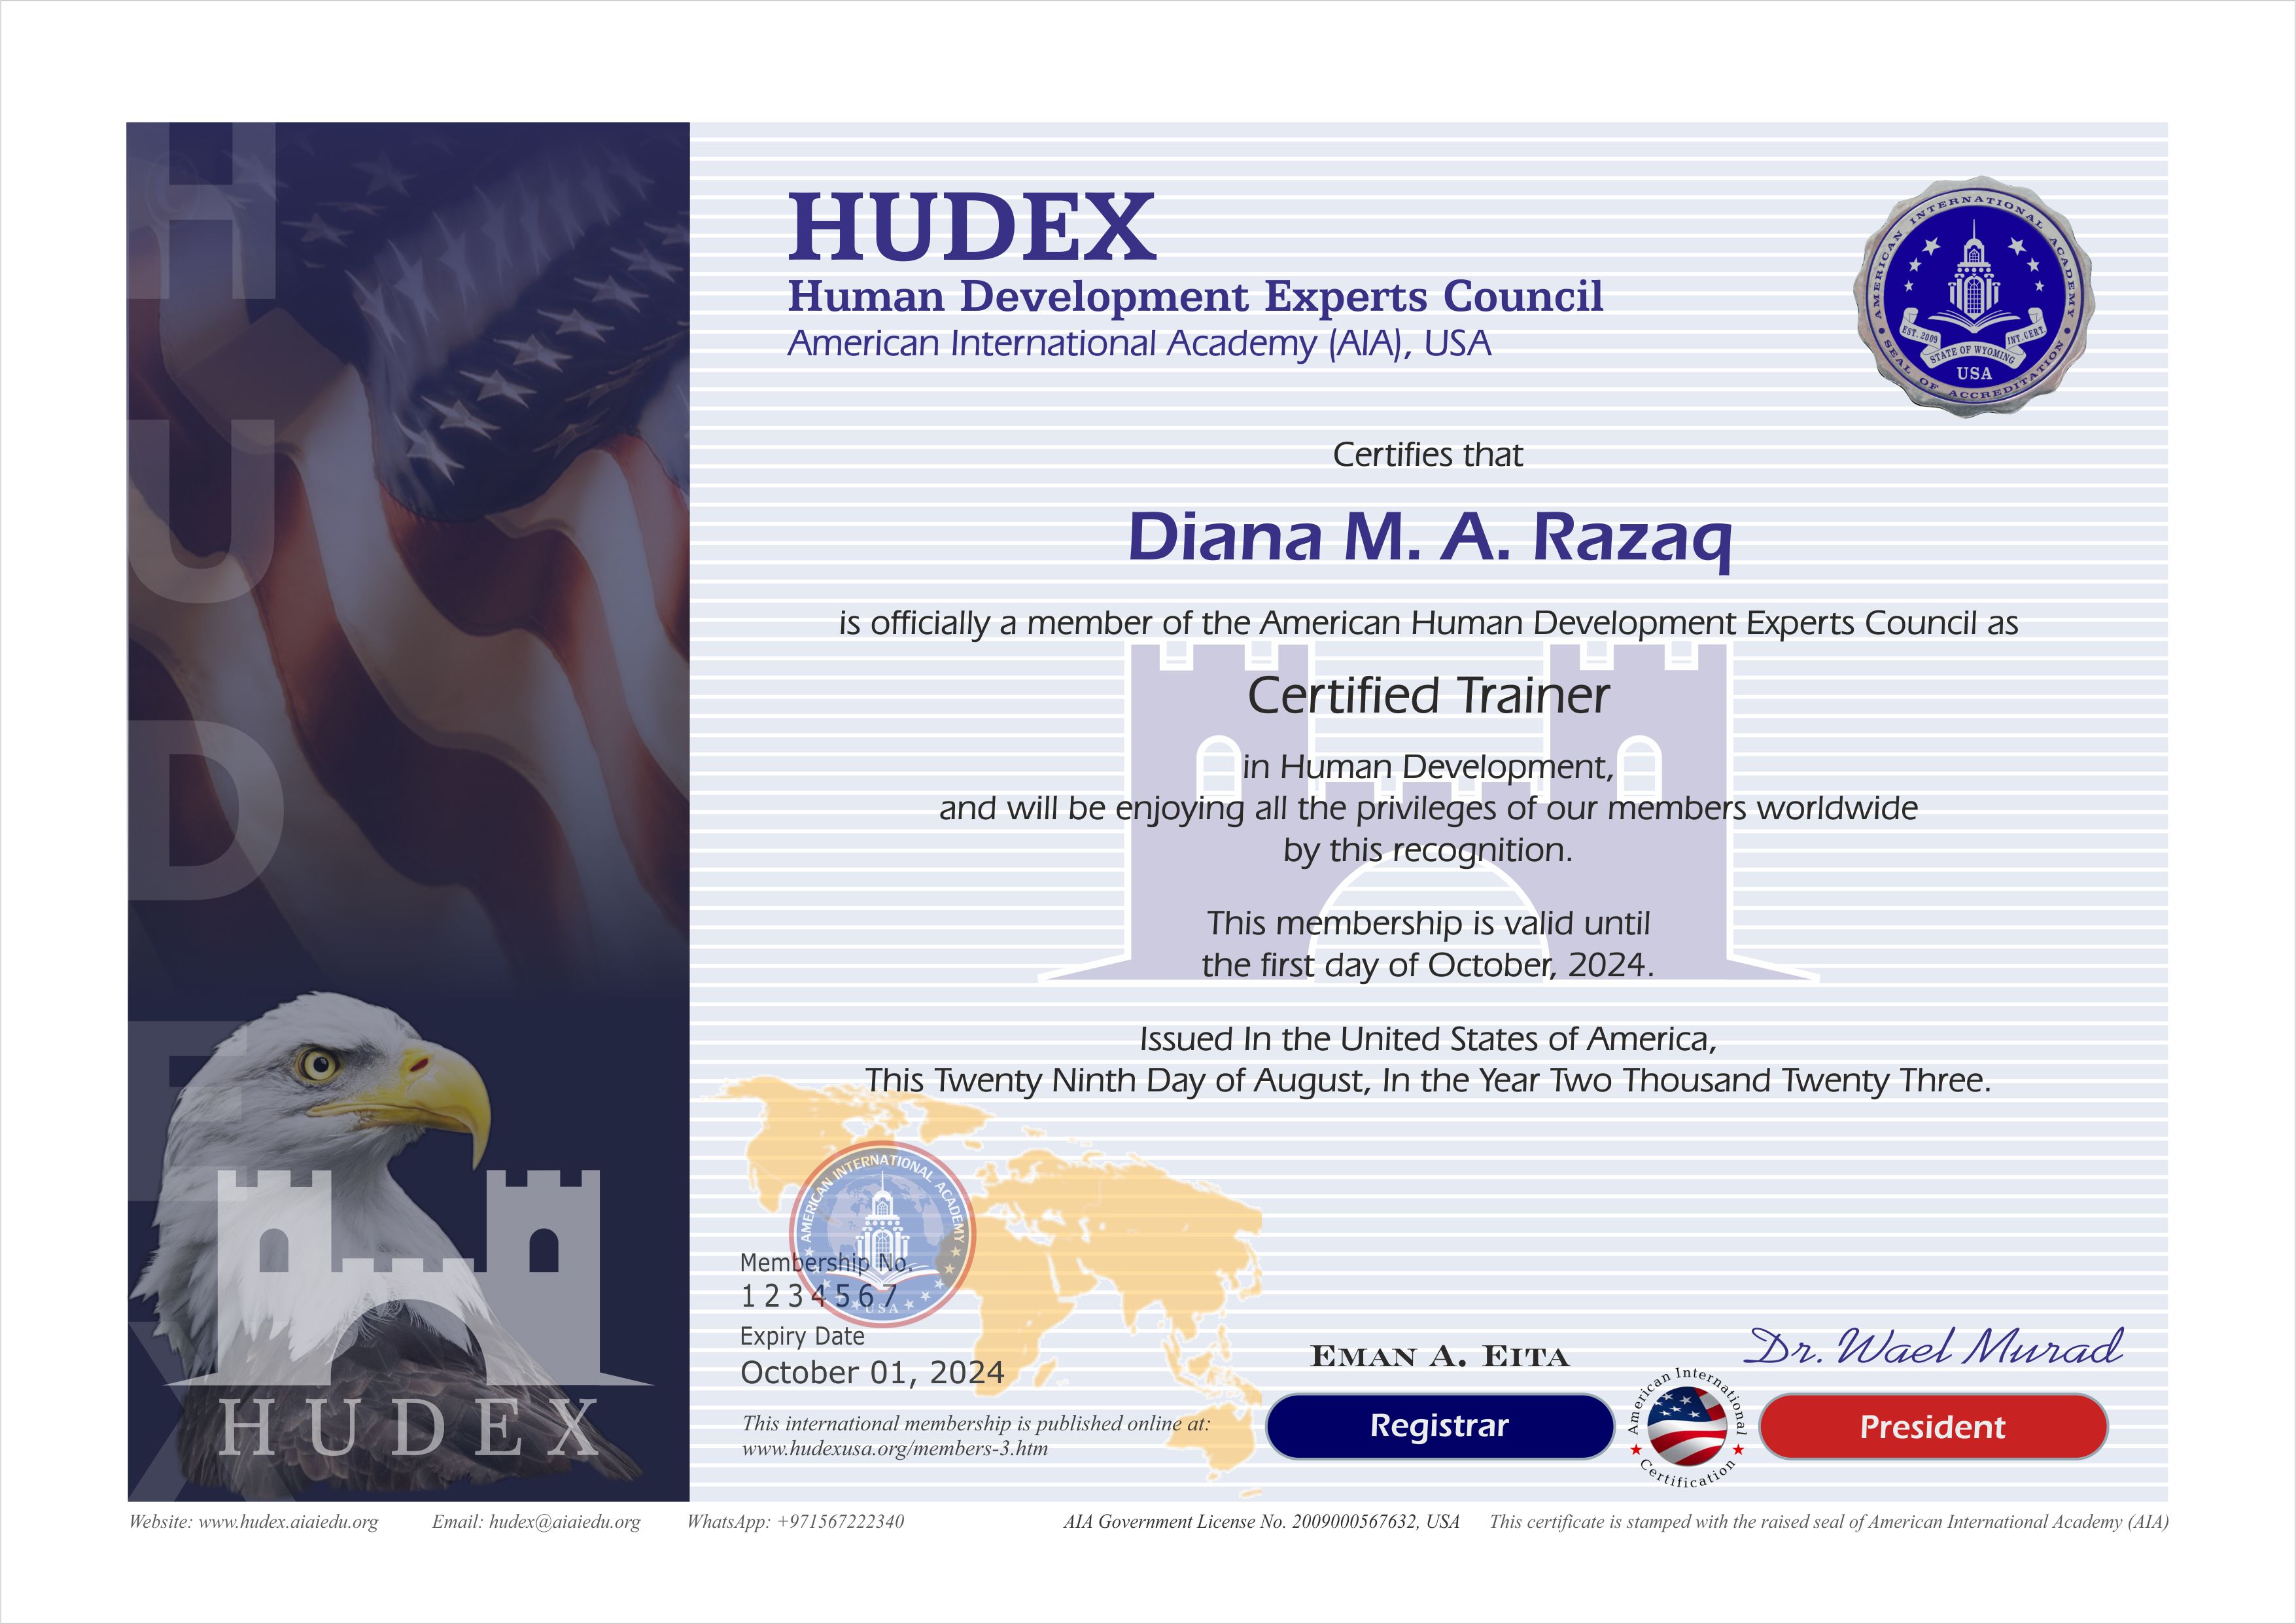 HUDEX_Membership_Certificate